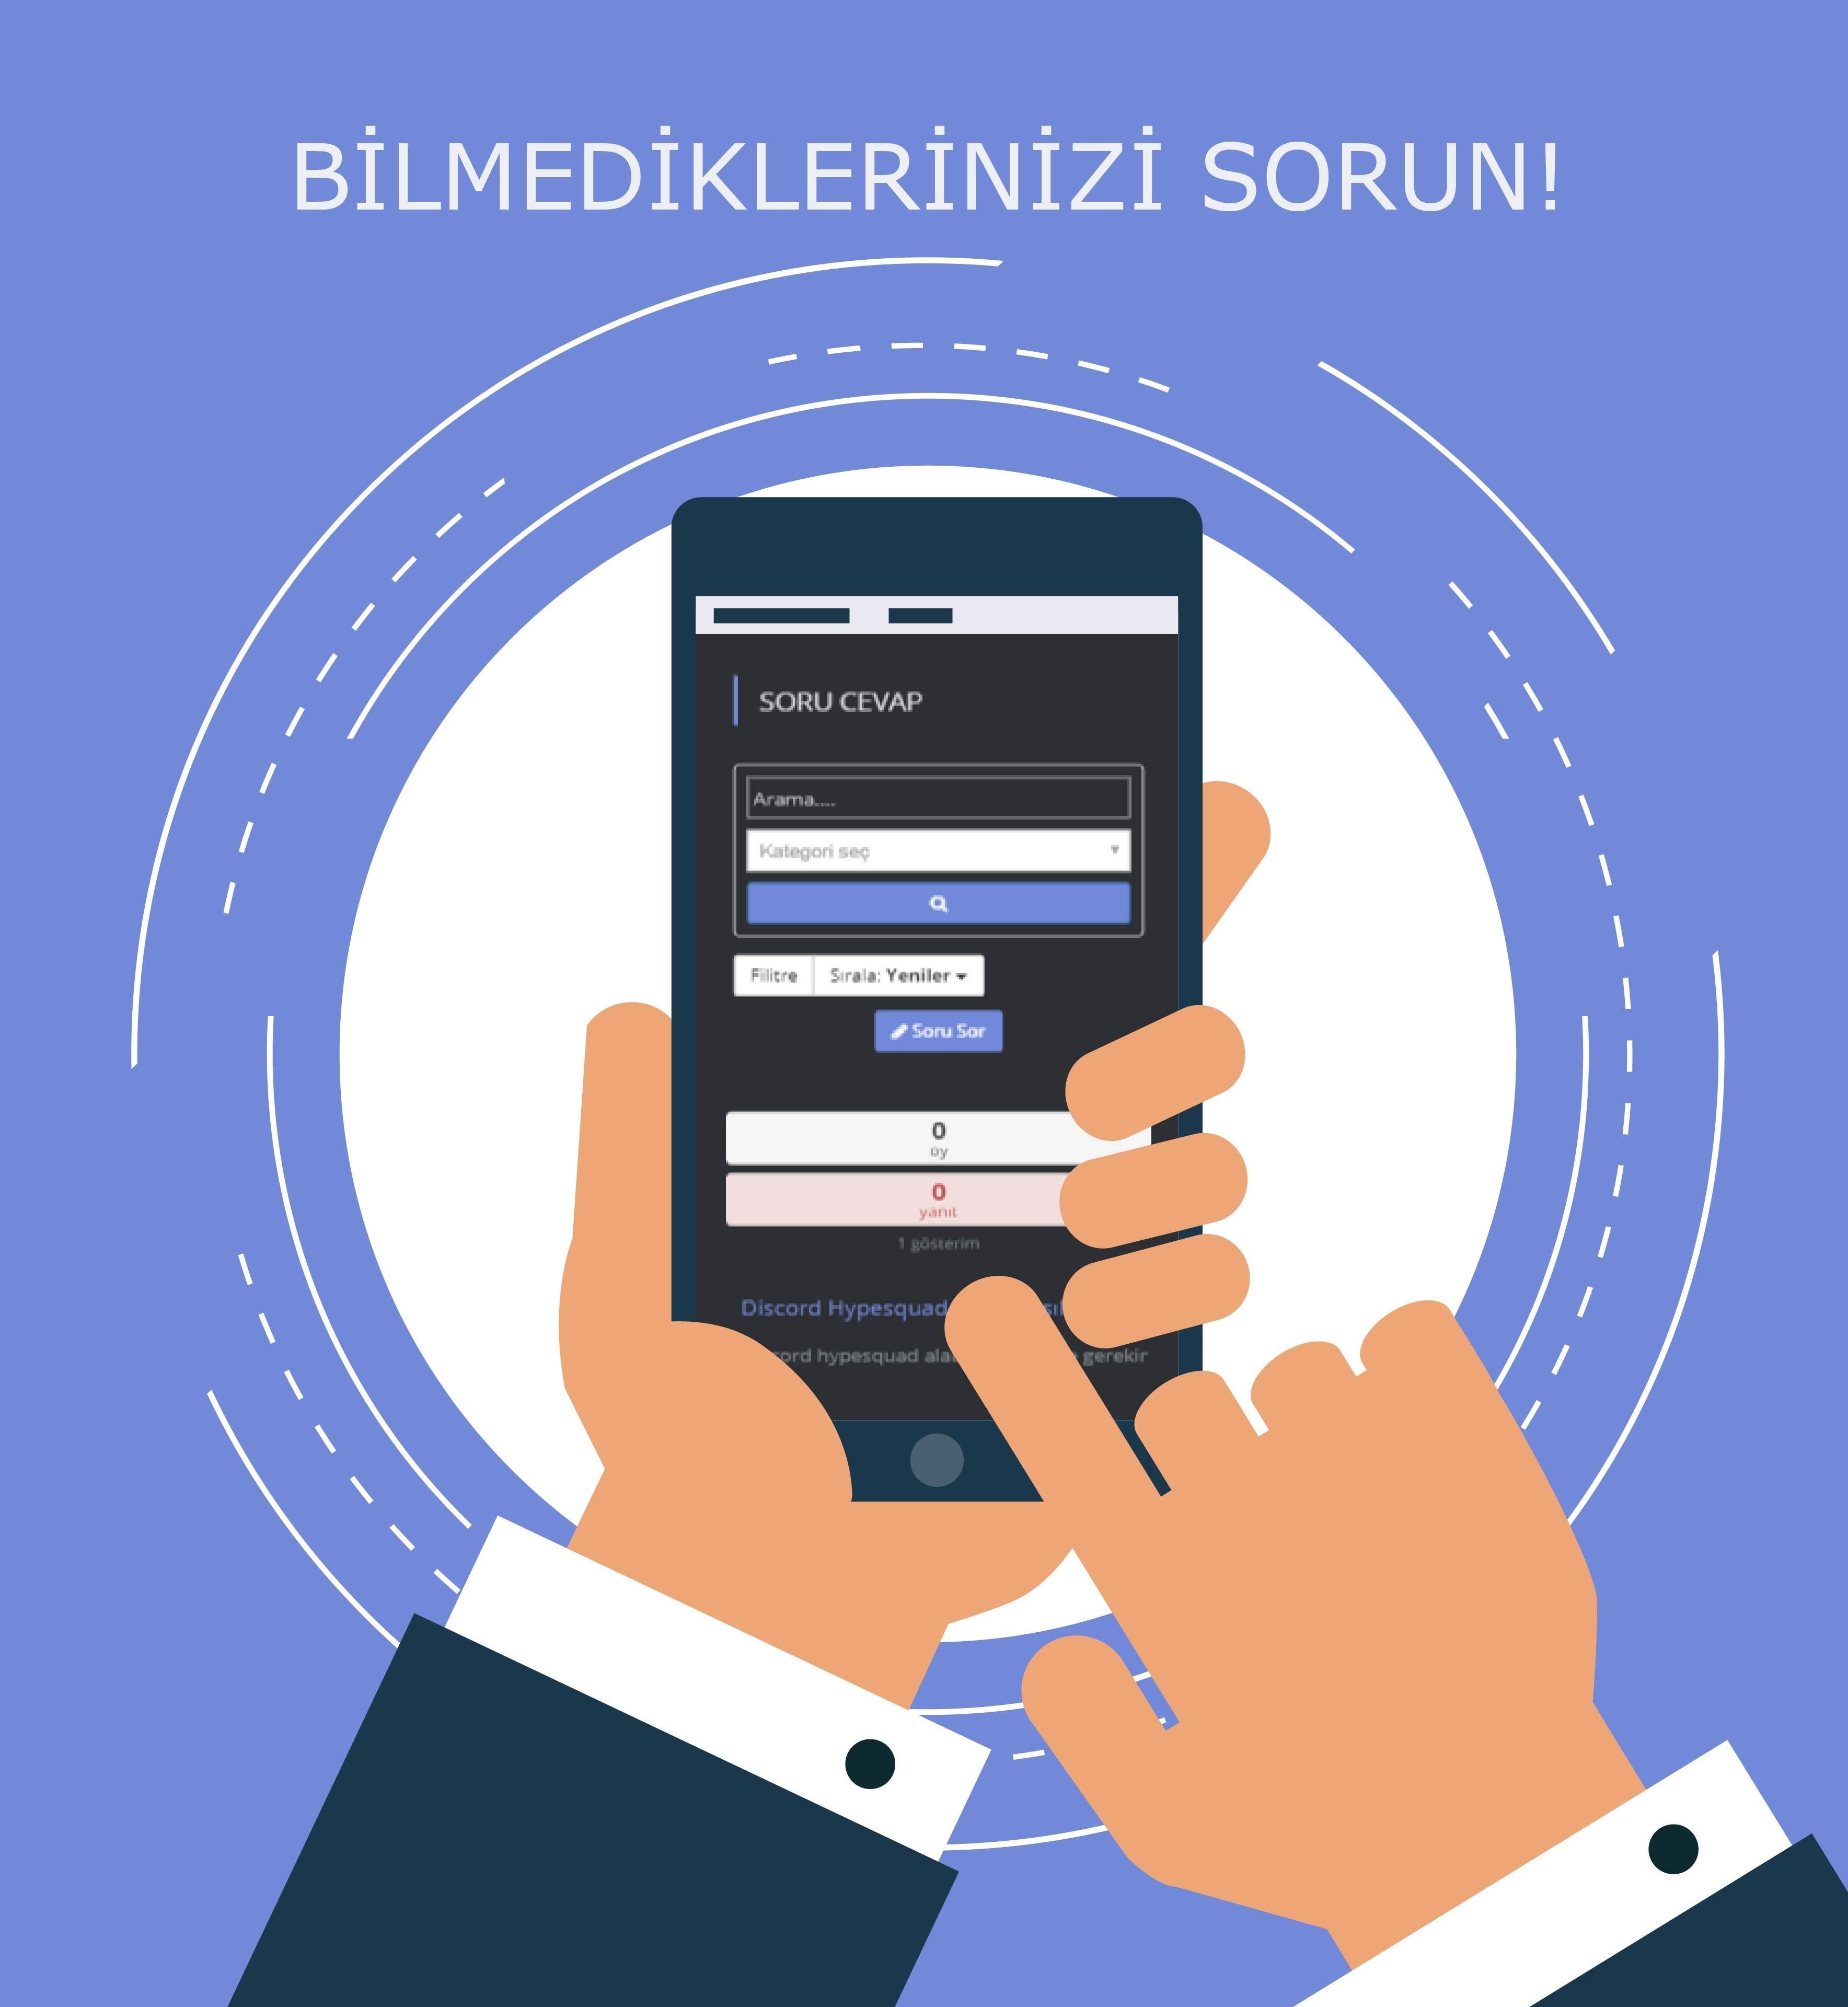 Discord Turkiye Blog Ve Soru Cevap For Android Apk Download - roblox discord tarkiye